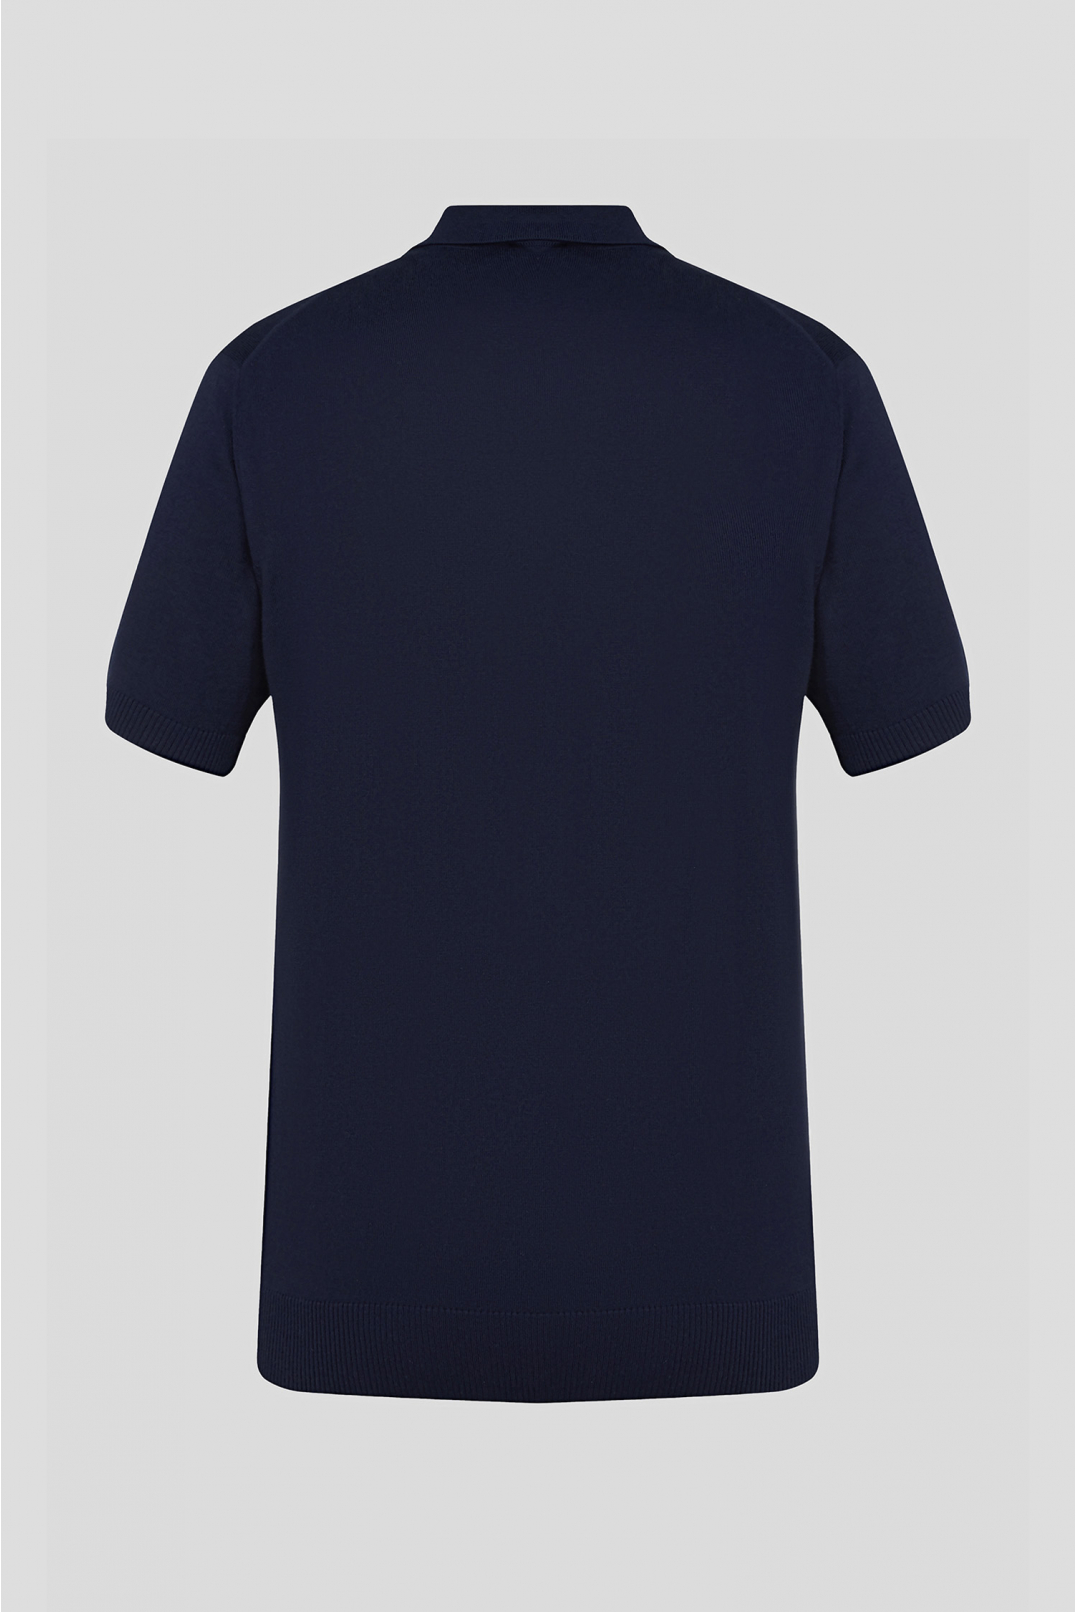 Мужской темно-синий шелковый джемпер с коротким рукавом - 2